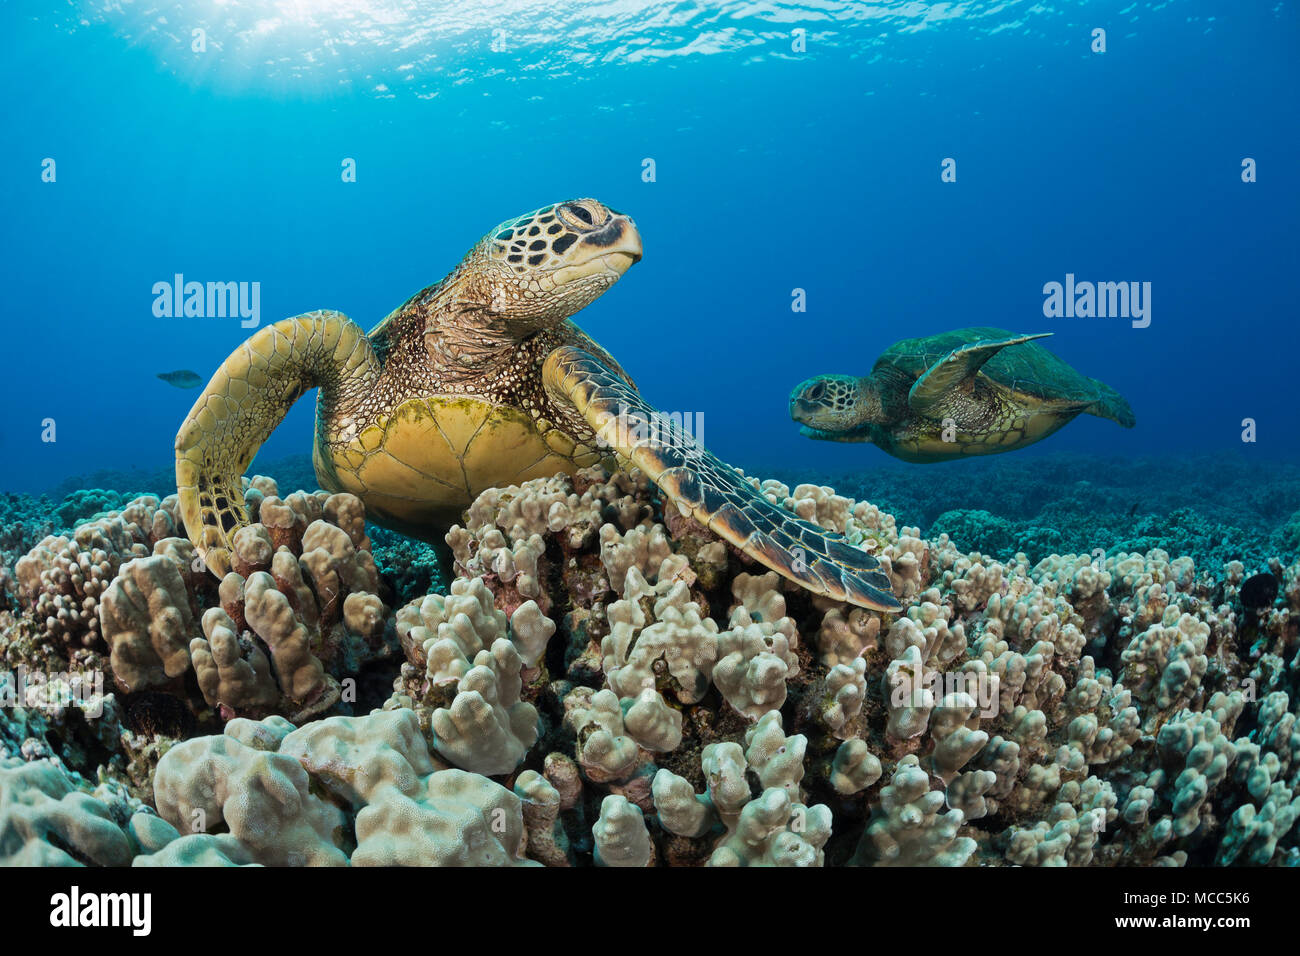 Grünen Meeresschildkröten, Chelonia mydas, eine vom Aussterben bedrohte Spezies. Hawaii. Stockfoto